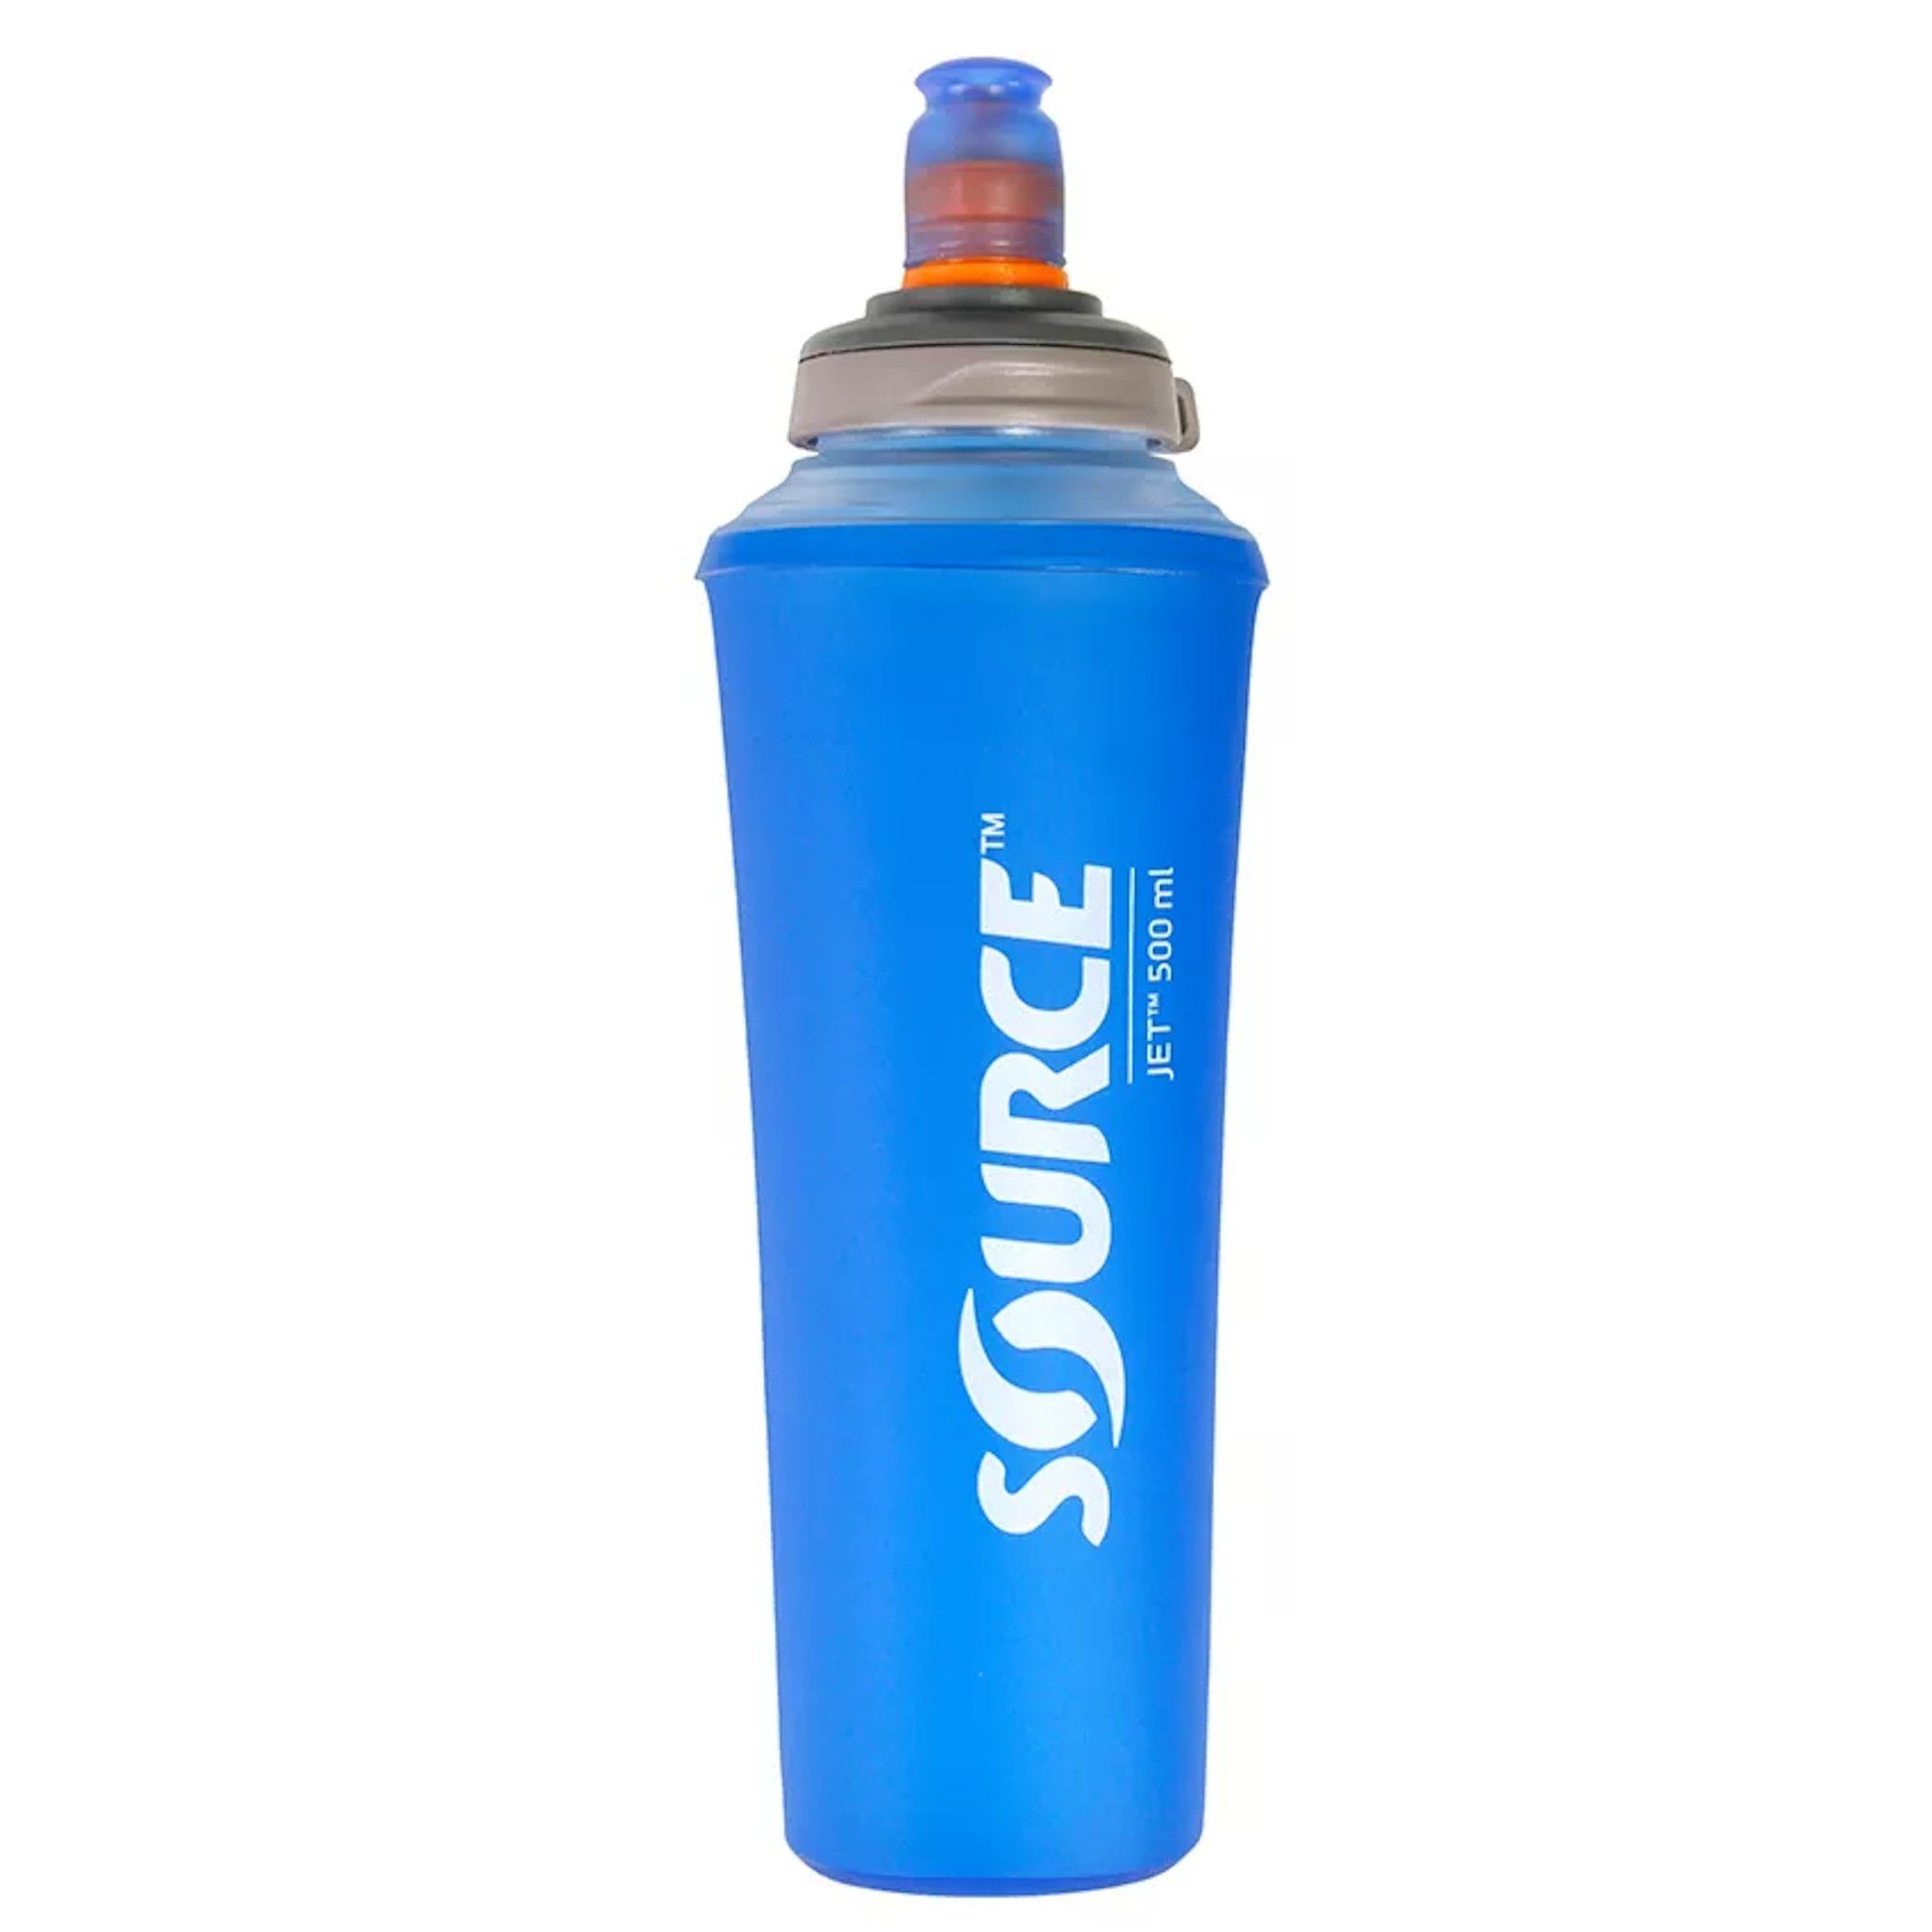 Source Wasserflasche Trinkflasche 0,5 Liter 2070700105 Jet Faltflasche